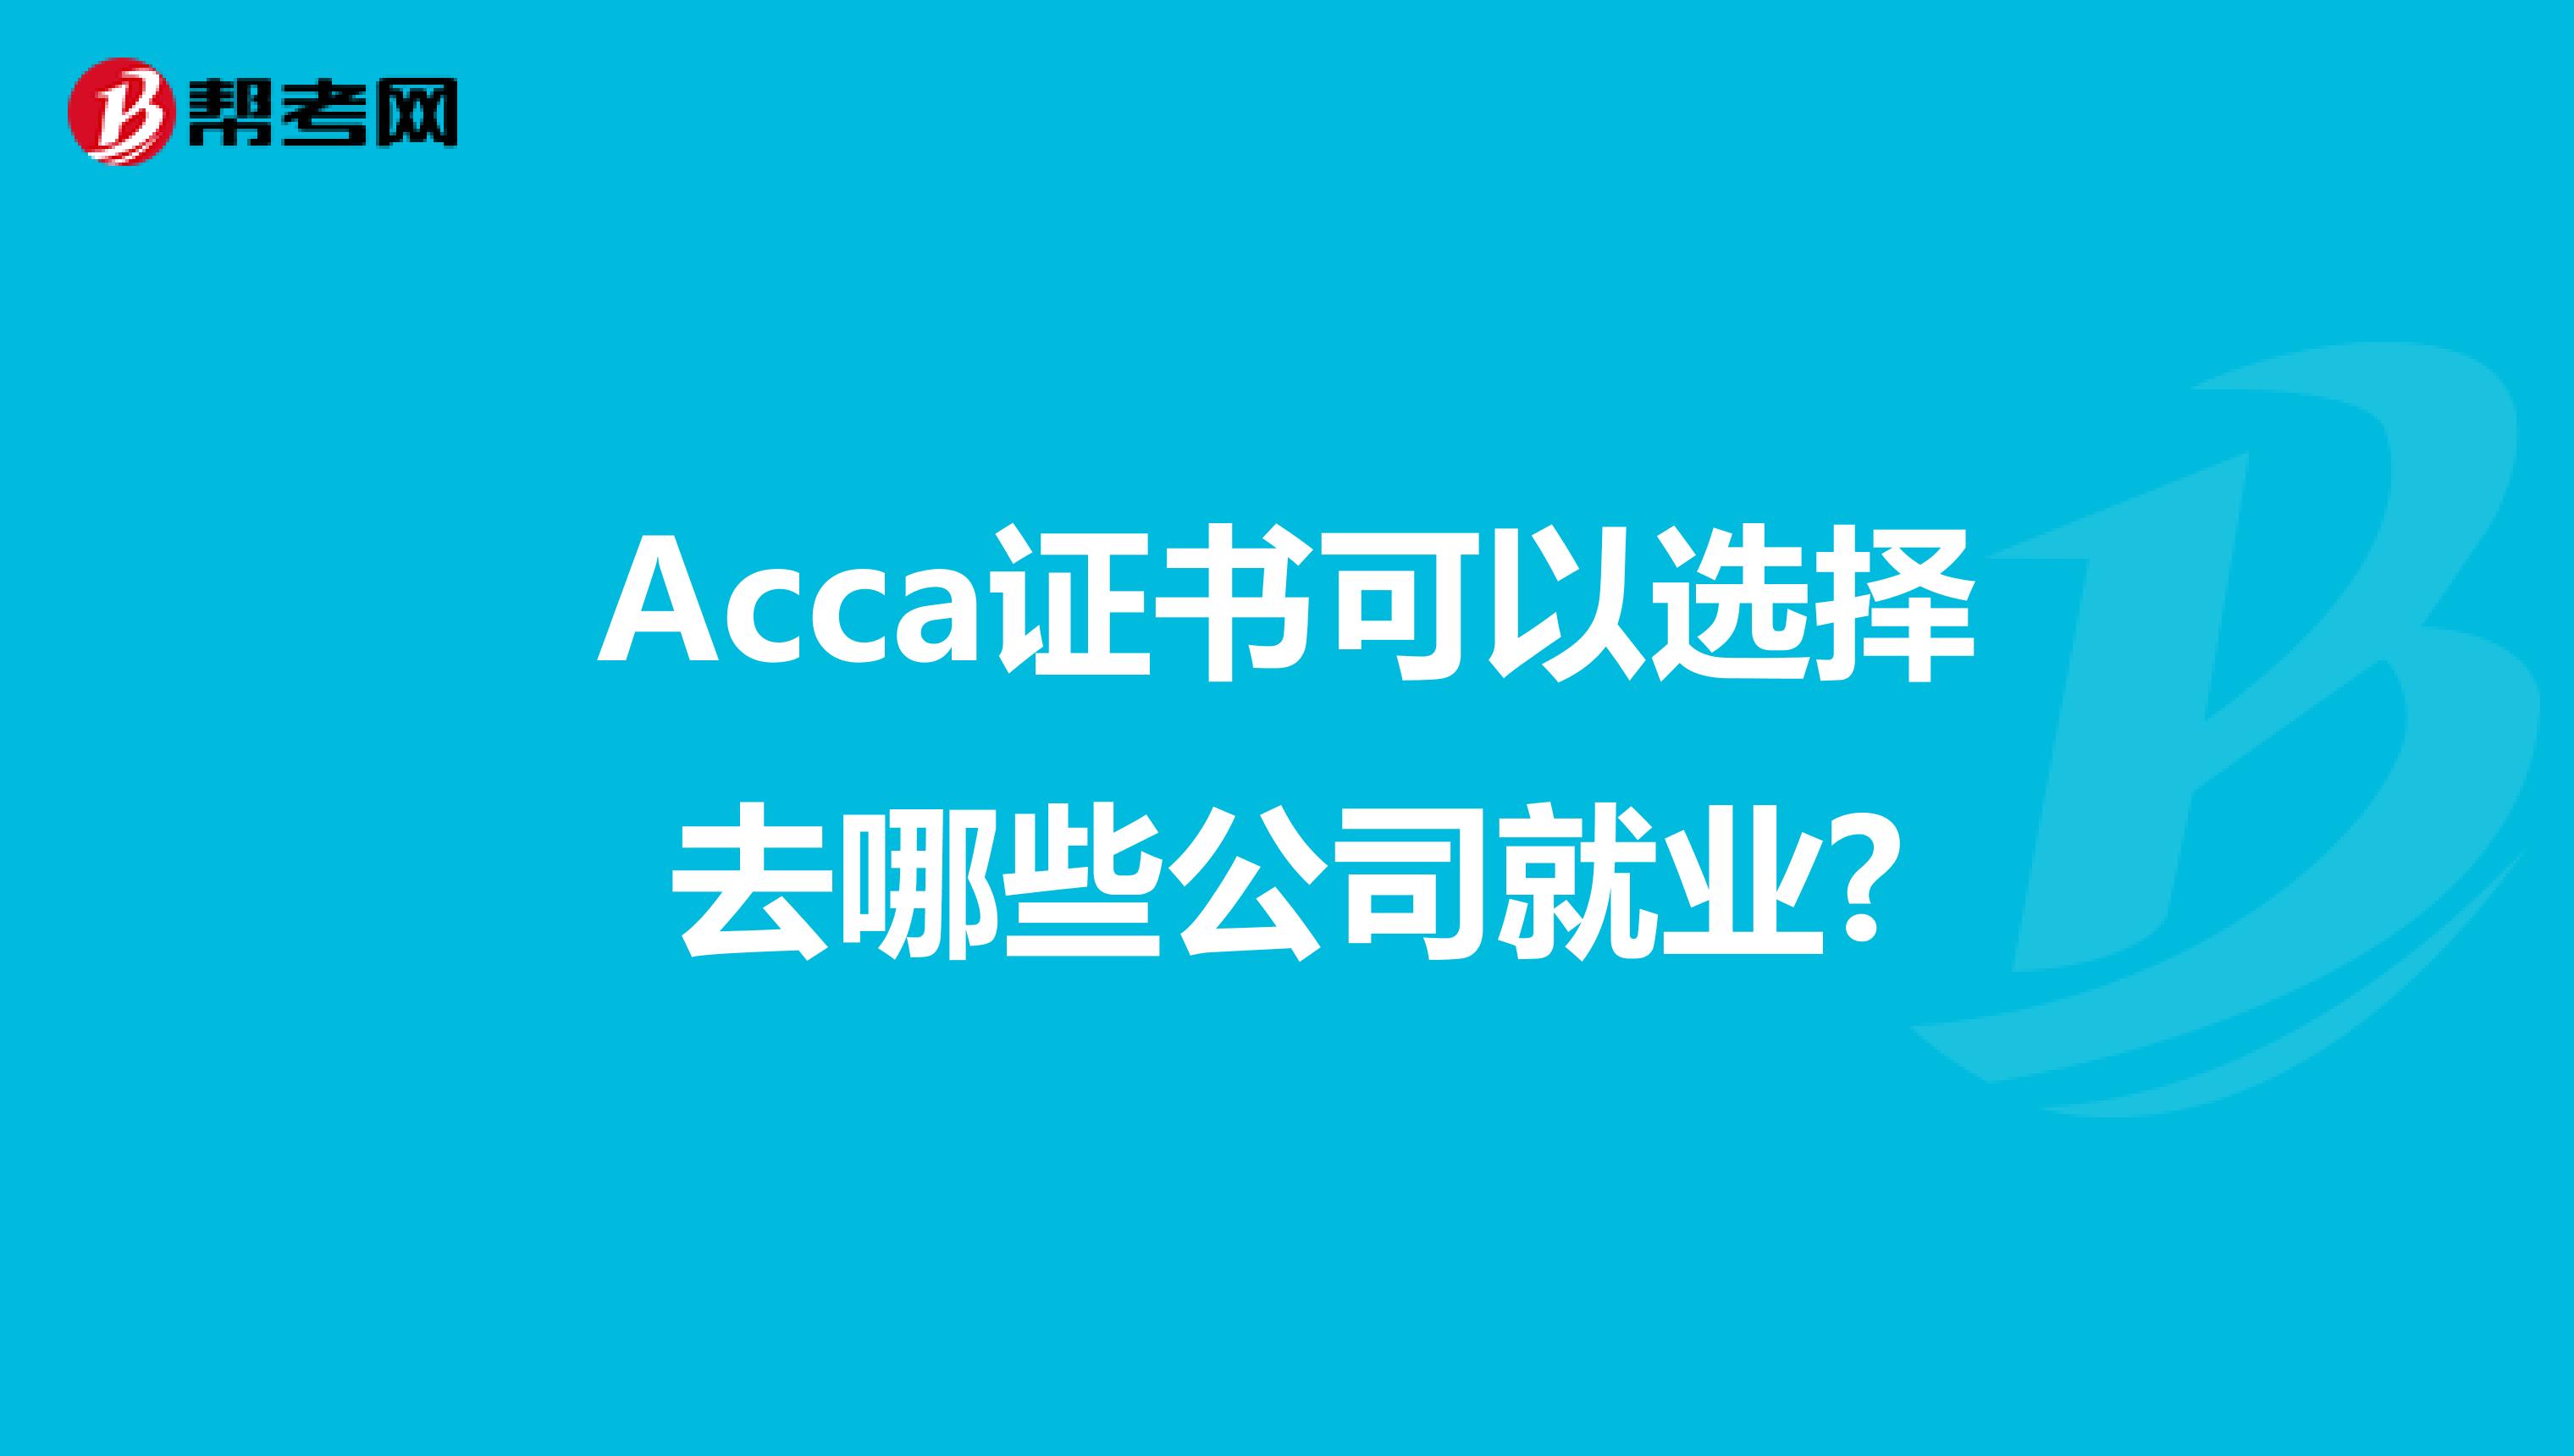 Acca证书可以选择去哪些公司就业?